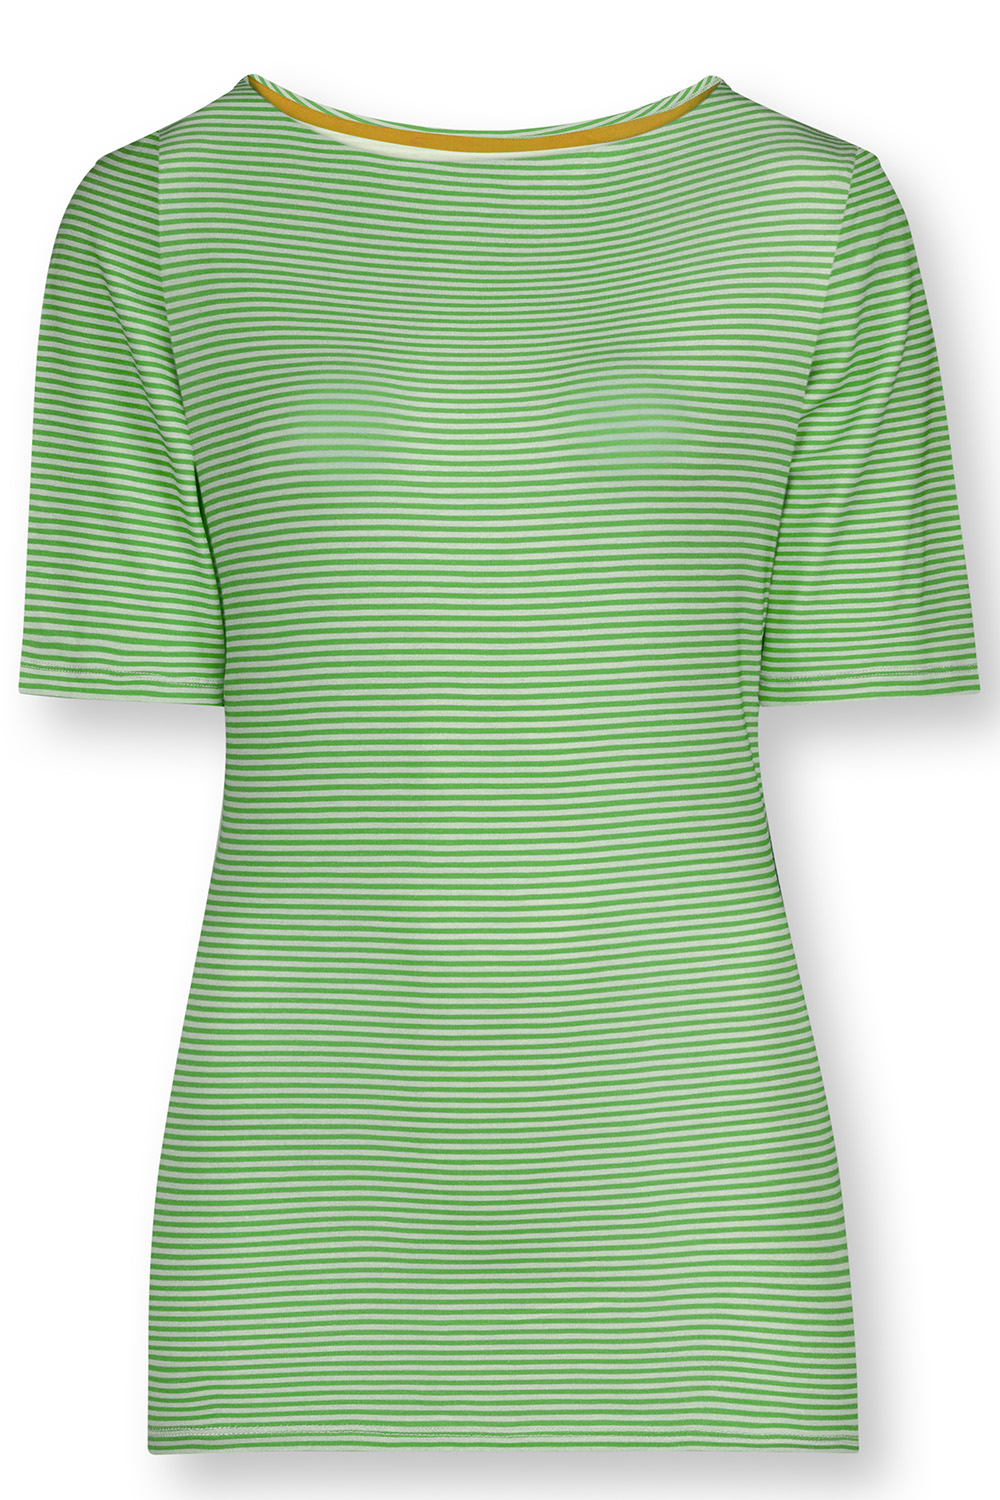 Pip Studio Tjessy Little Sumo Kurzarmshirt Loungewear 2 42 grün günstig online kaufen